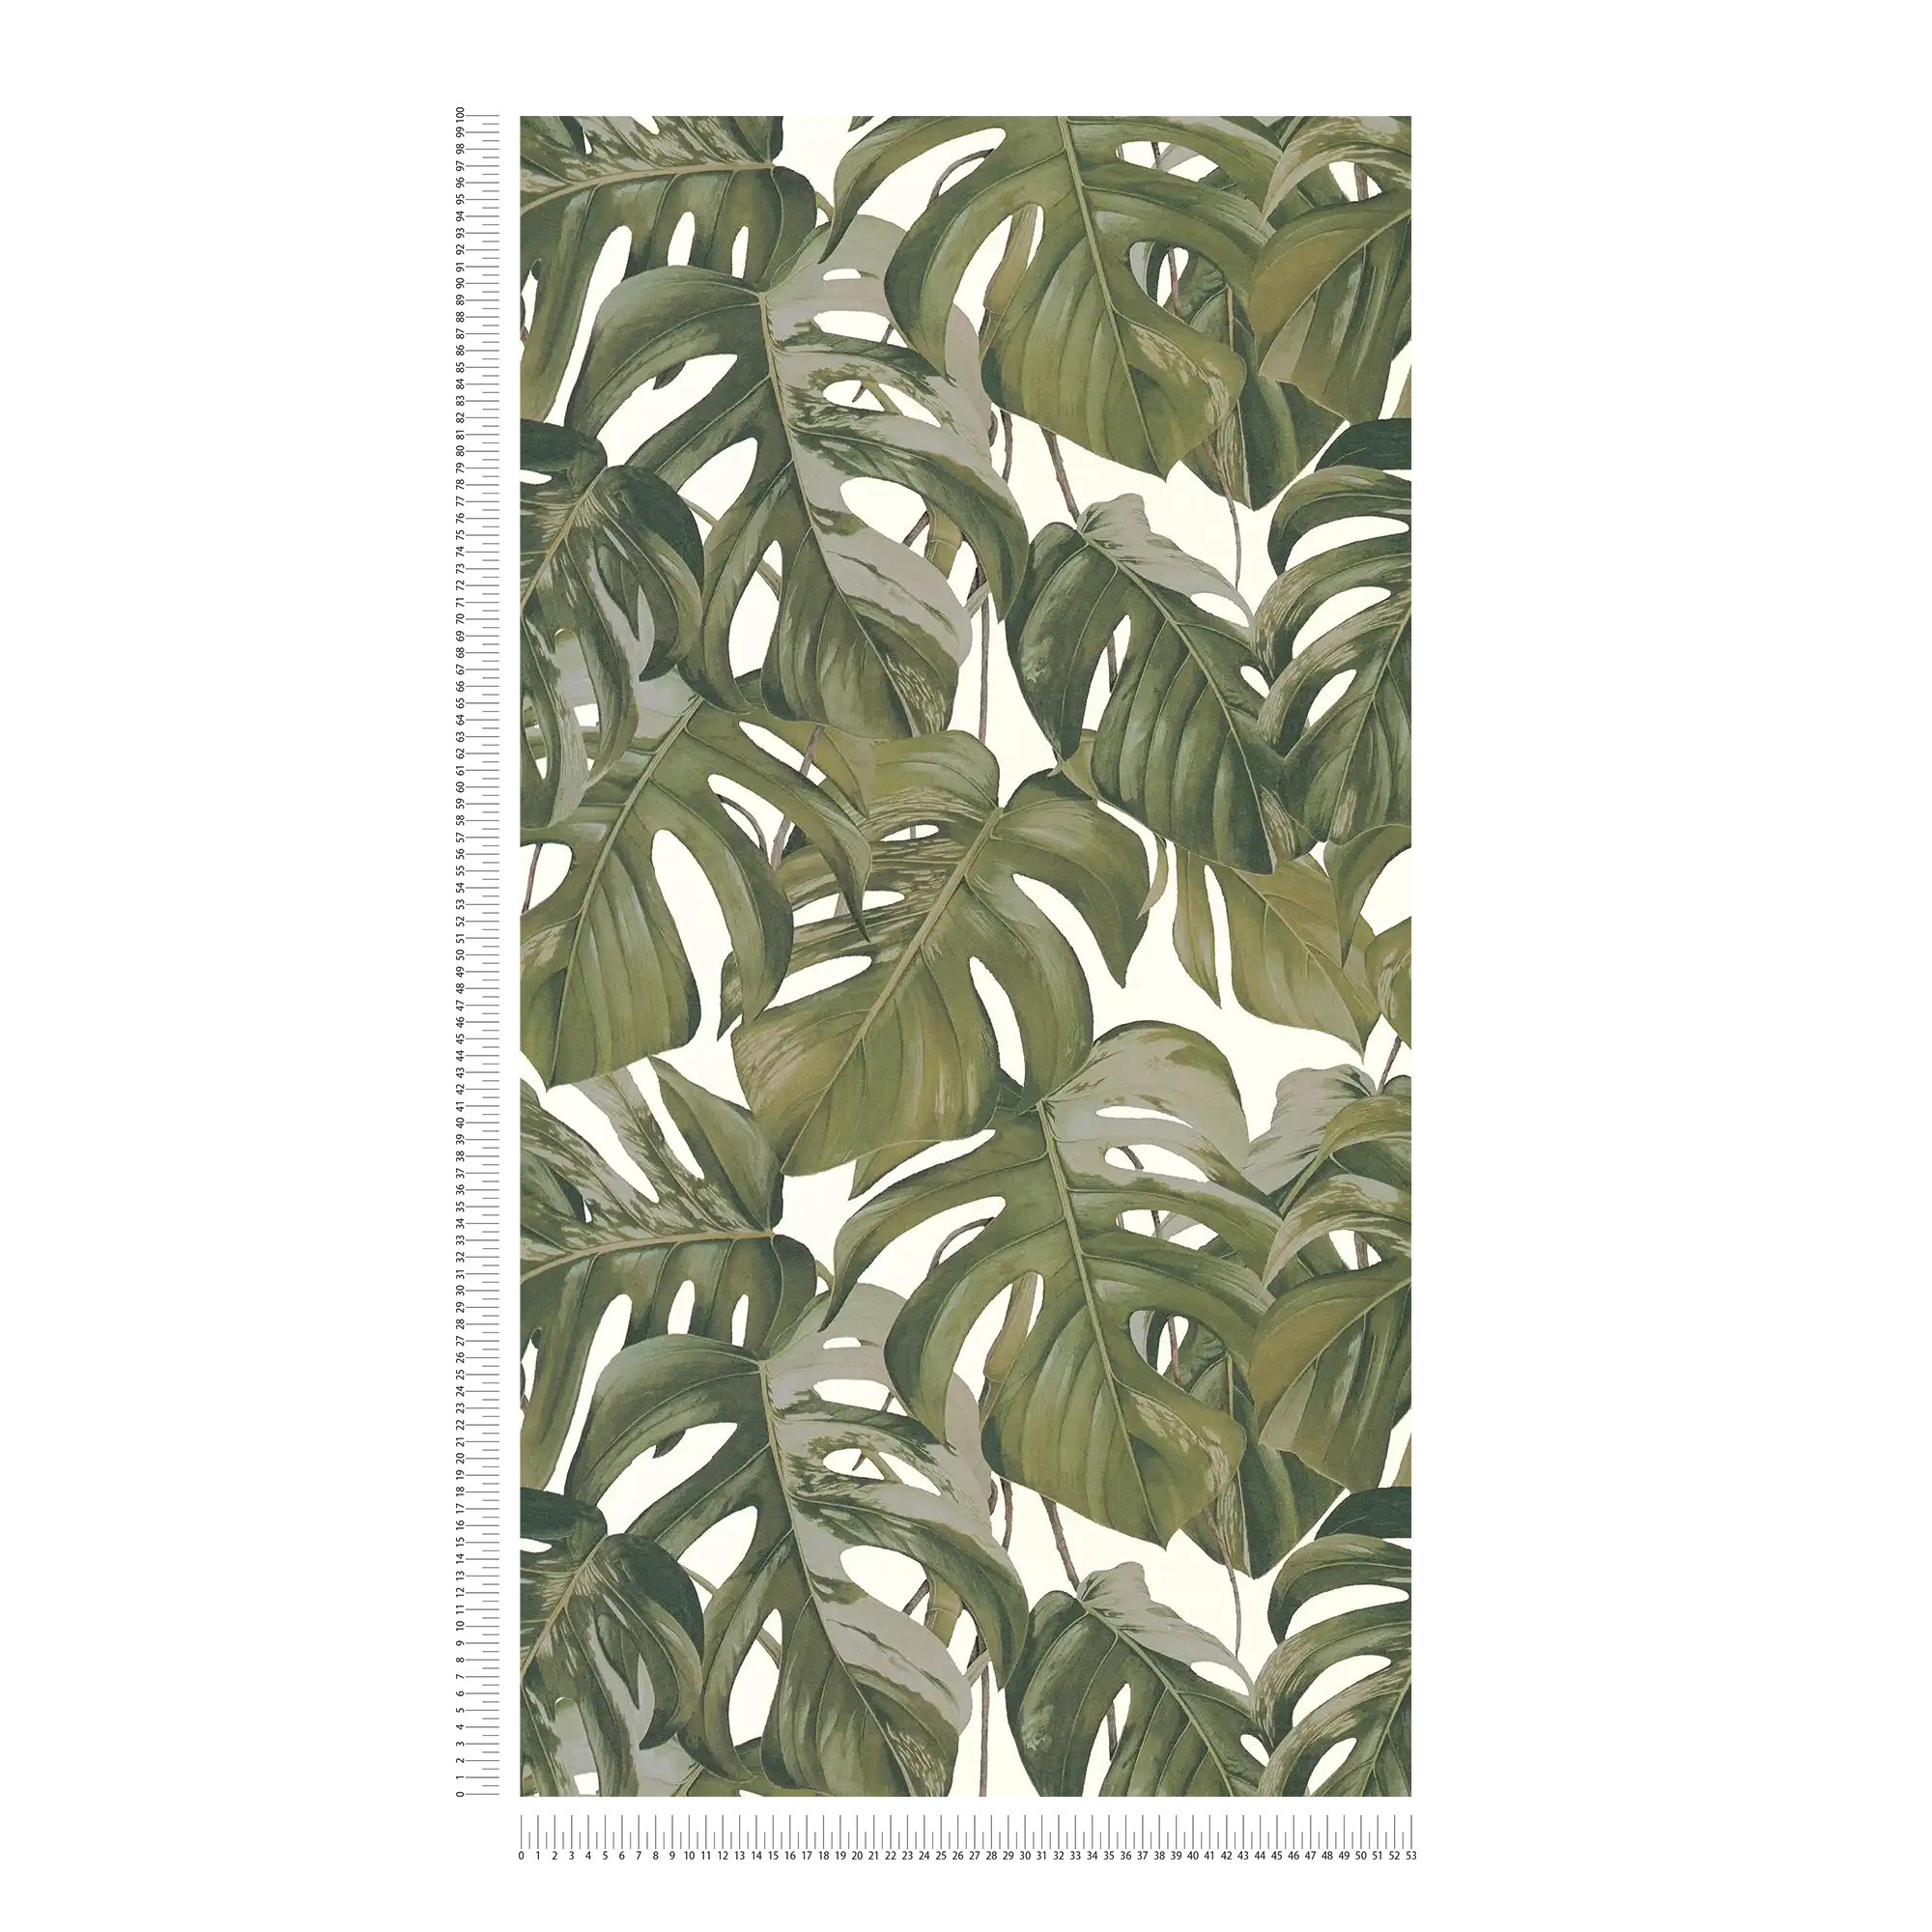             Carta da parati in tessuto non tessuto con motivo di foglie di Monstera - grigio, verde, bianco
        